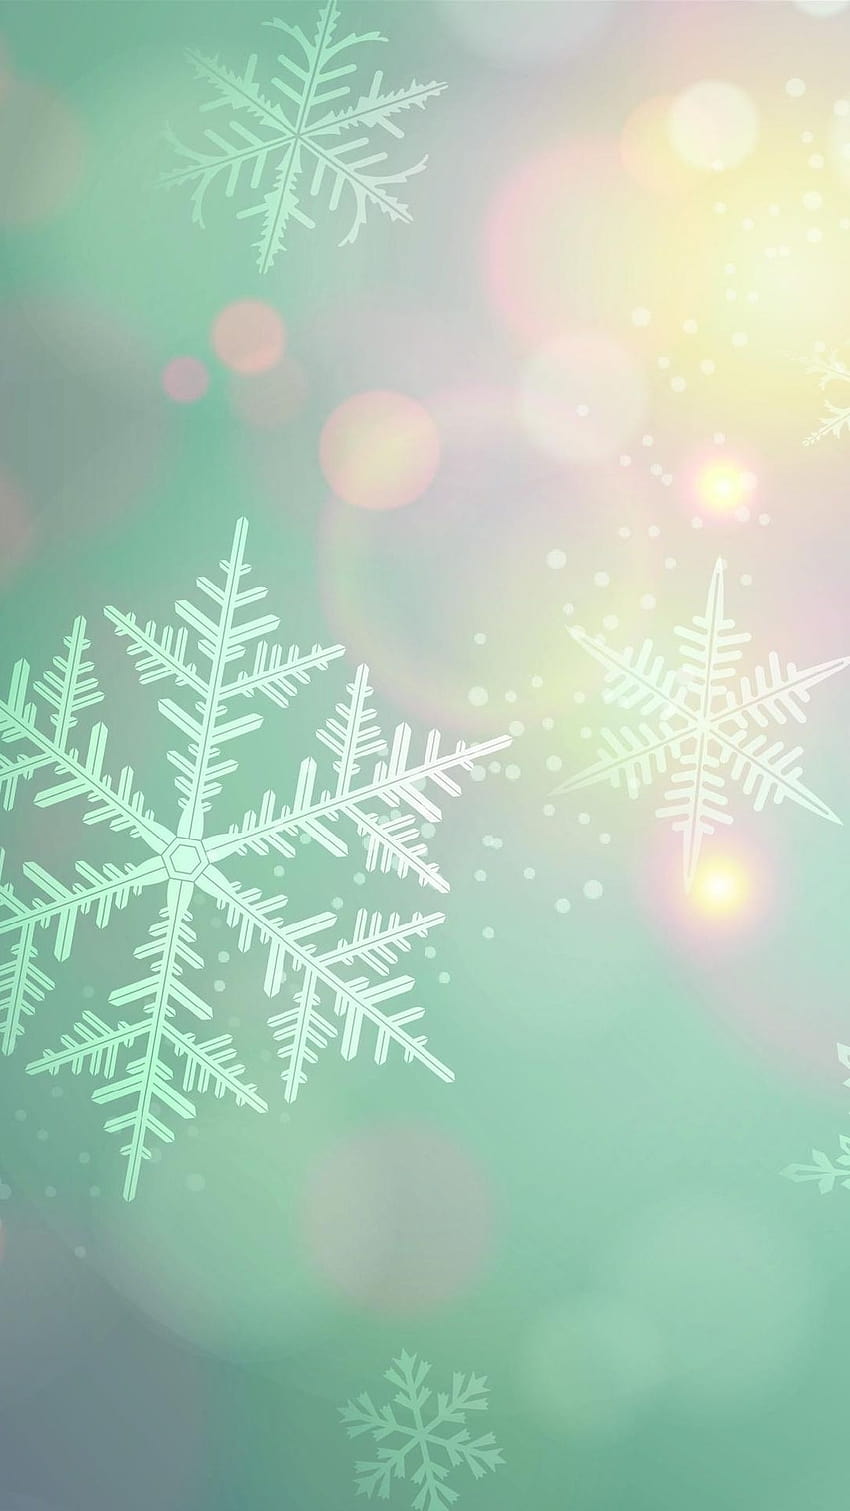 Pastel Christmas Images  Free Download on Freepik